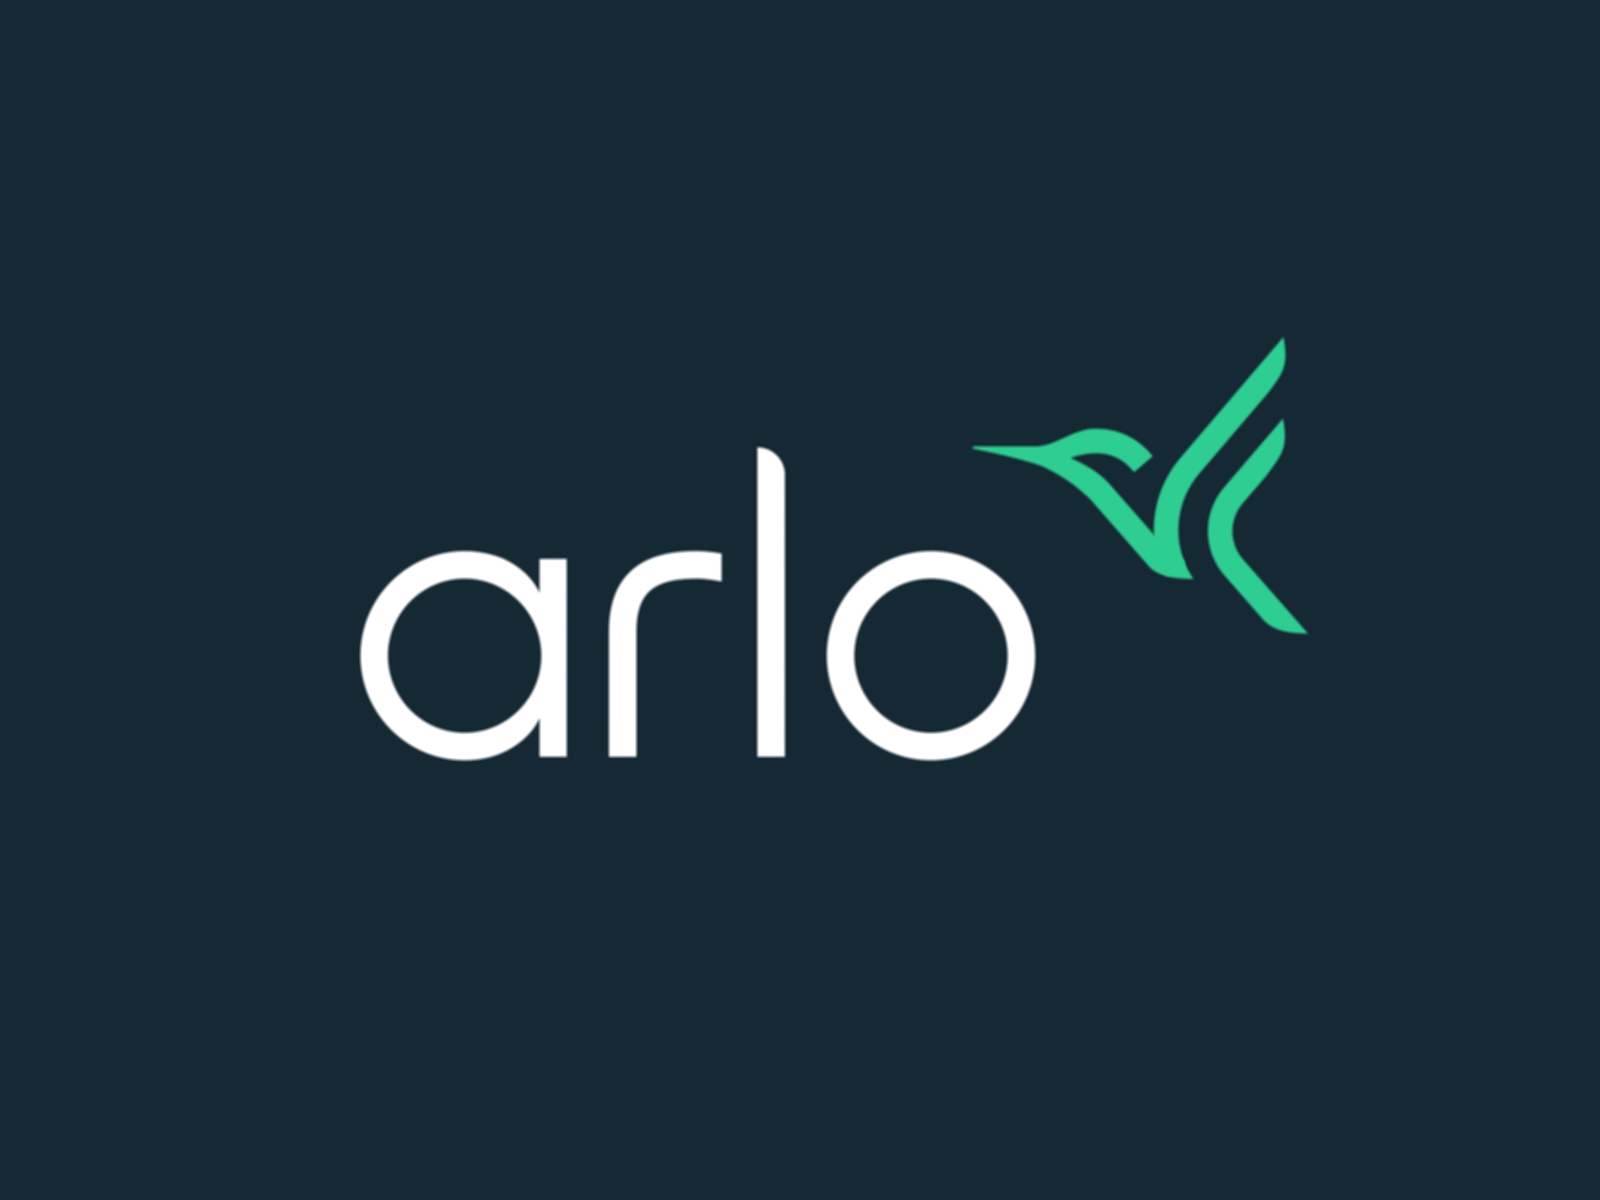 The new Arlo logo